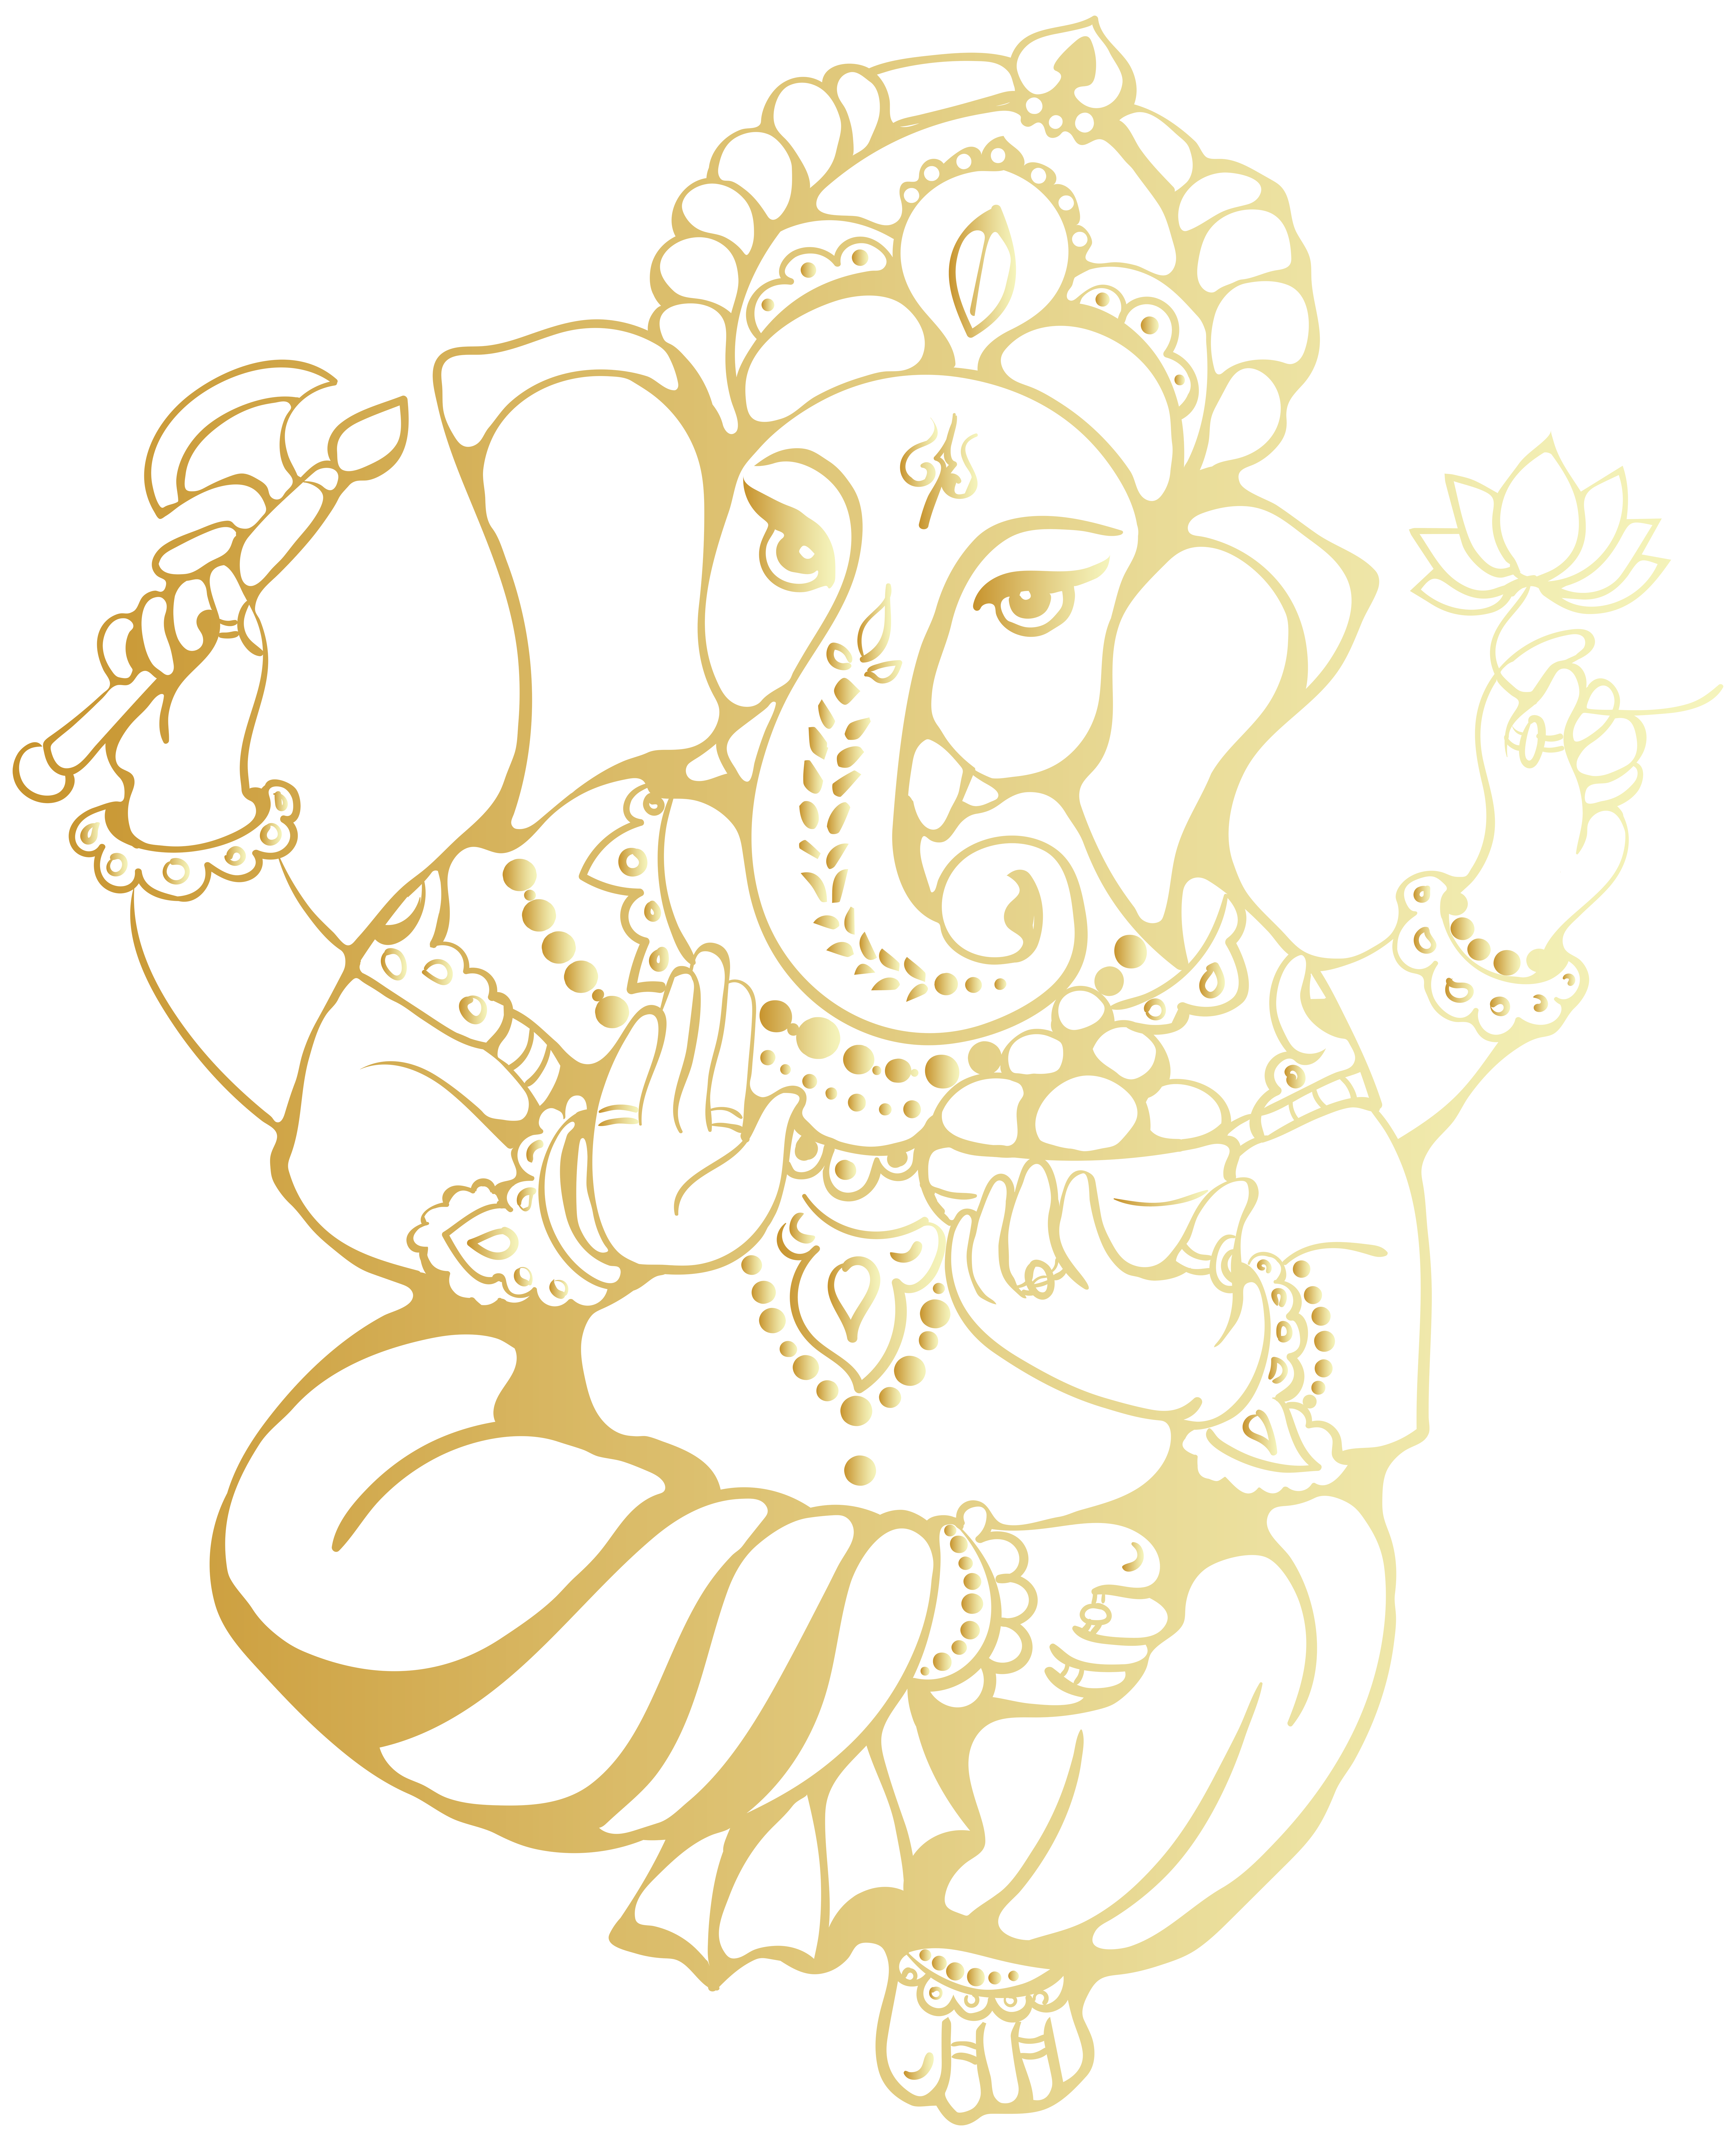 Lord Ganesh Image PNG libre